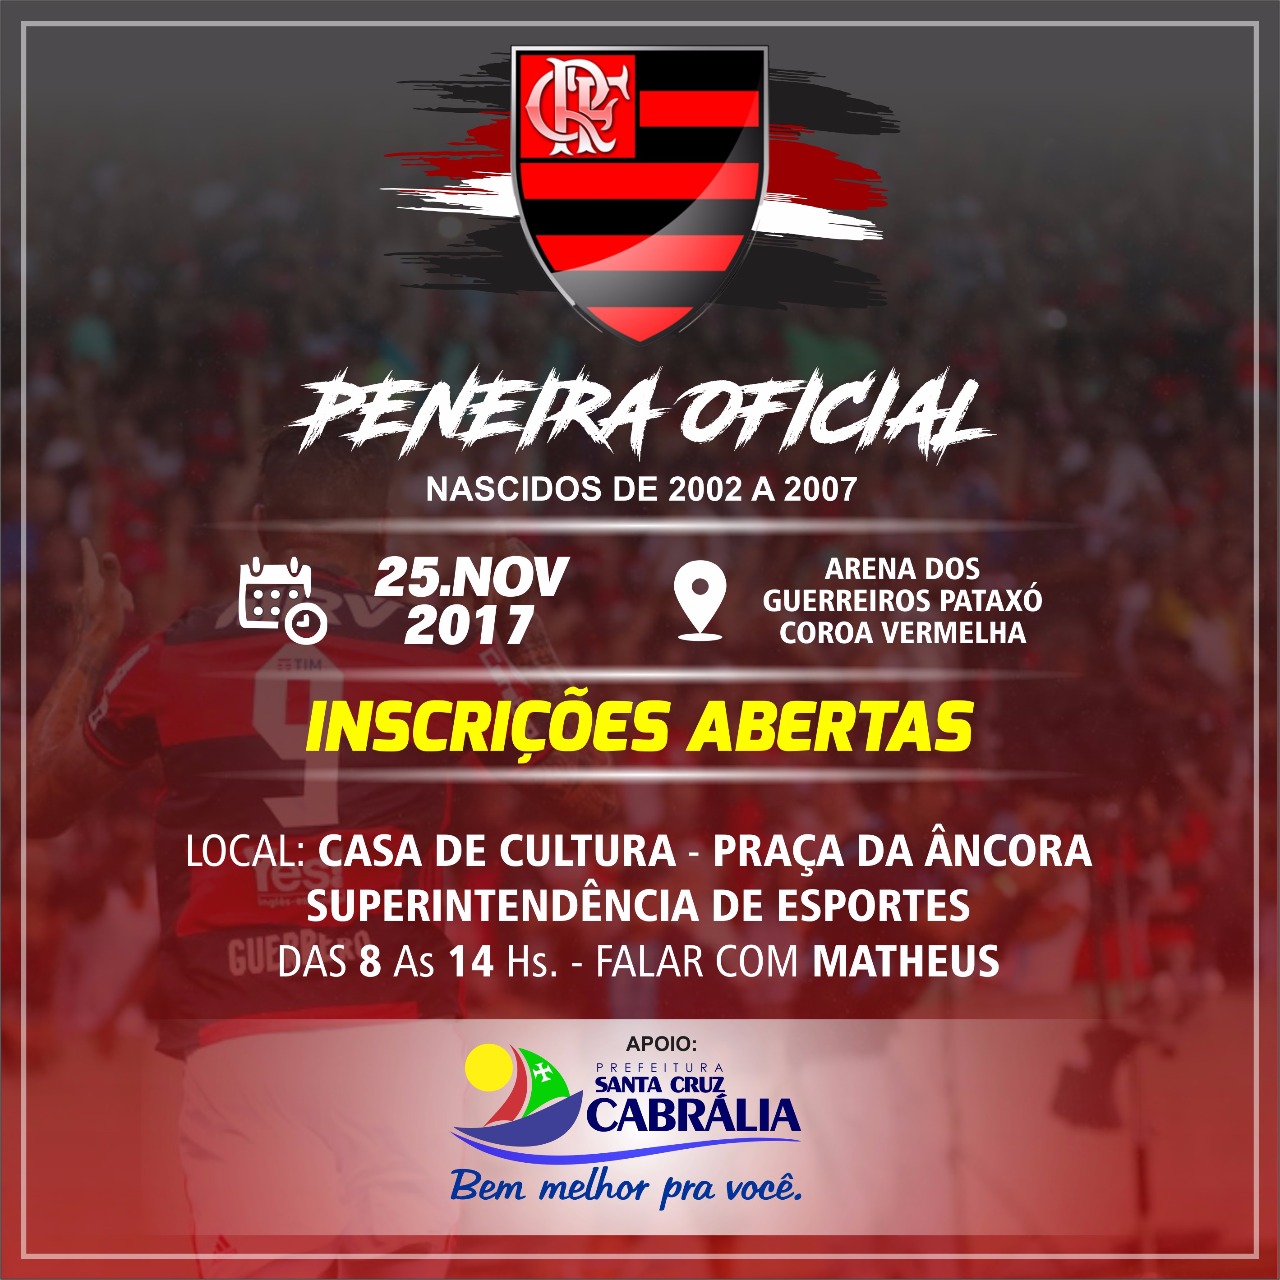 Flamengo faz peneira em Cabrália dia 25 5